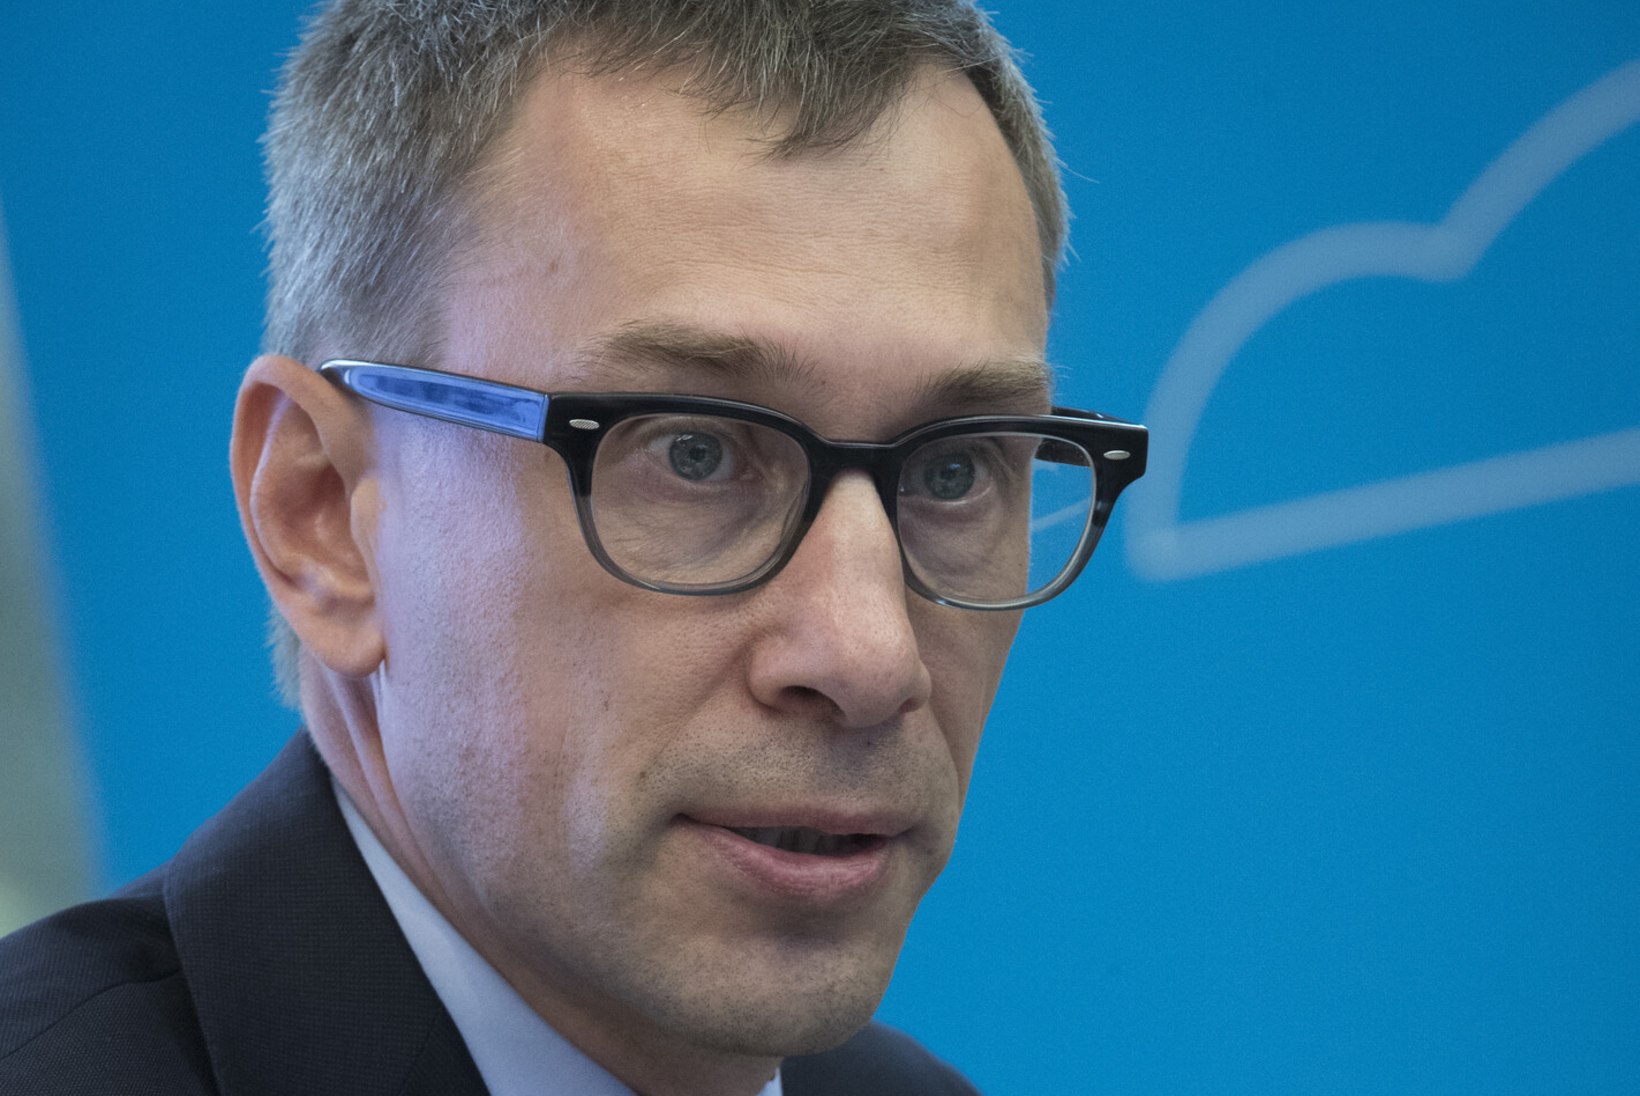 Eesti Gaasi juht püstloodis hinnatõusust: suuremate gaasimüüjate võrdluses on see kõige madalam